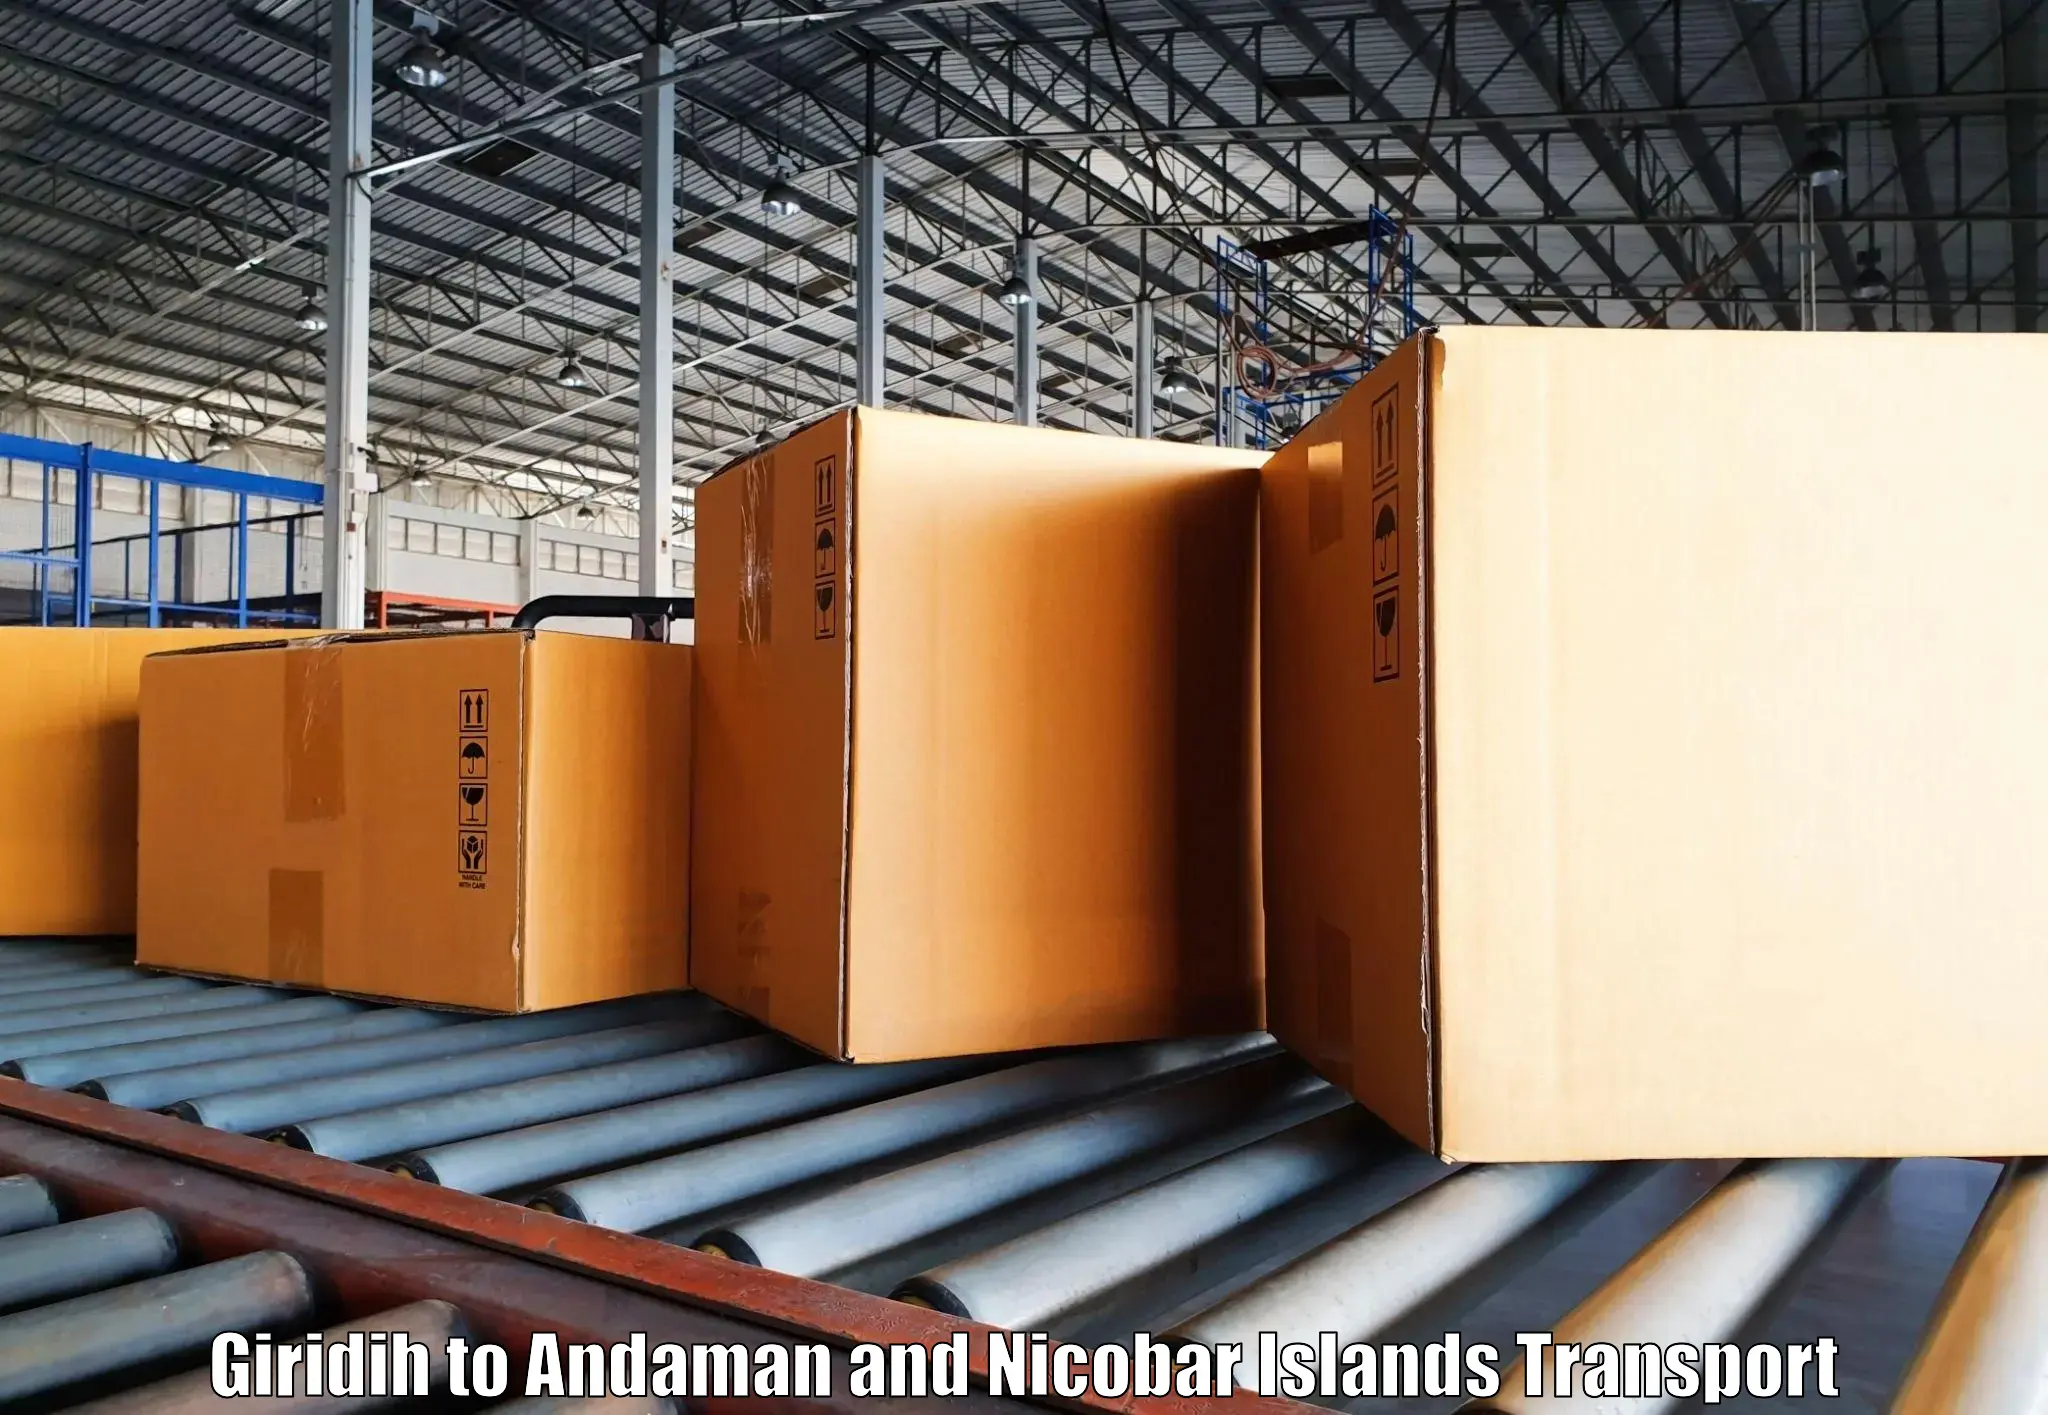 Furniture transport service Giridih to Andaman and Nicobar Islands